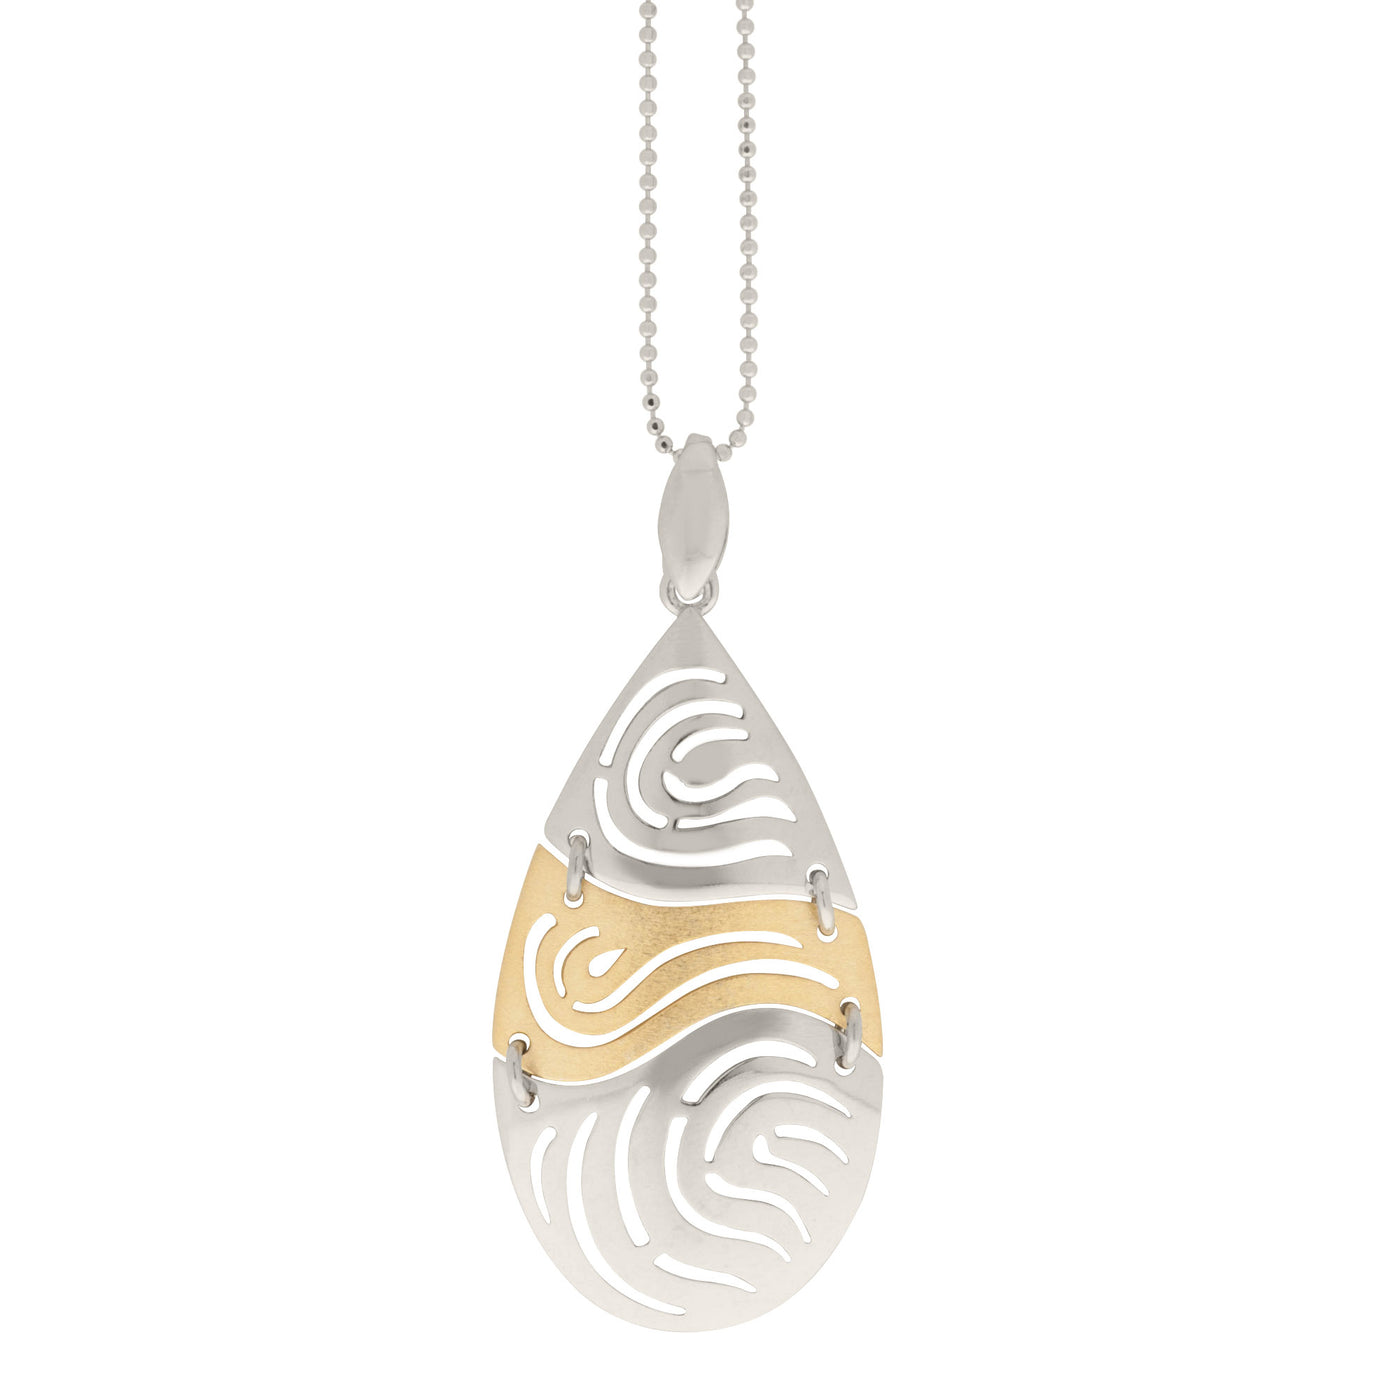 Rebecca Sloane Silver and Gold Station Open Swirl Design Pendant